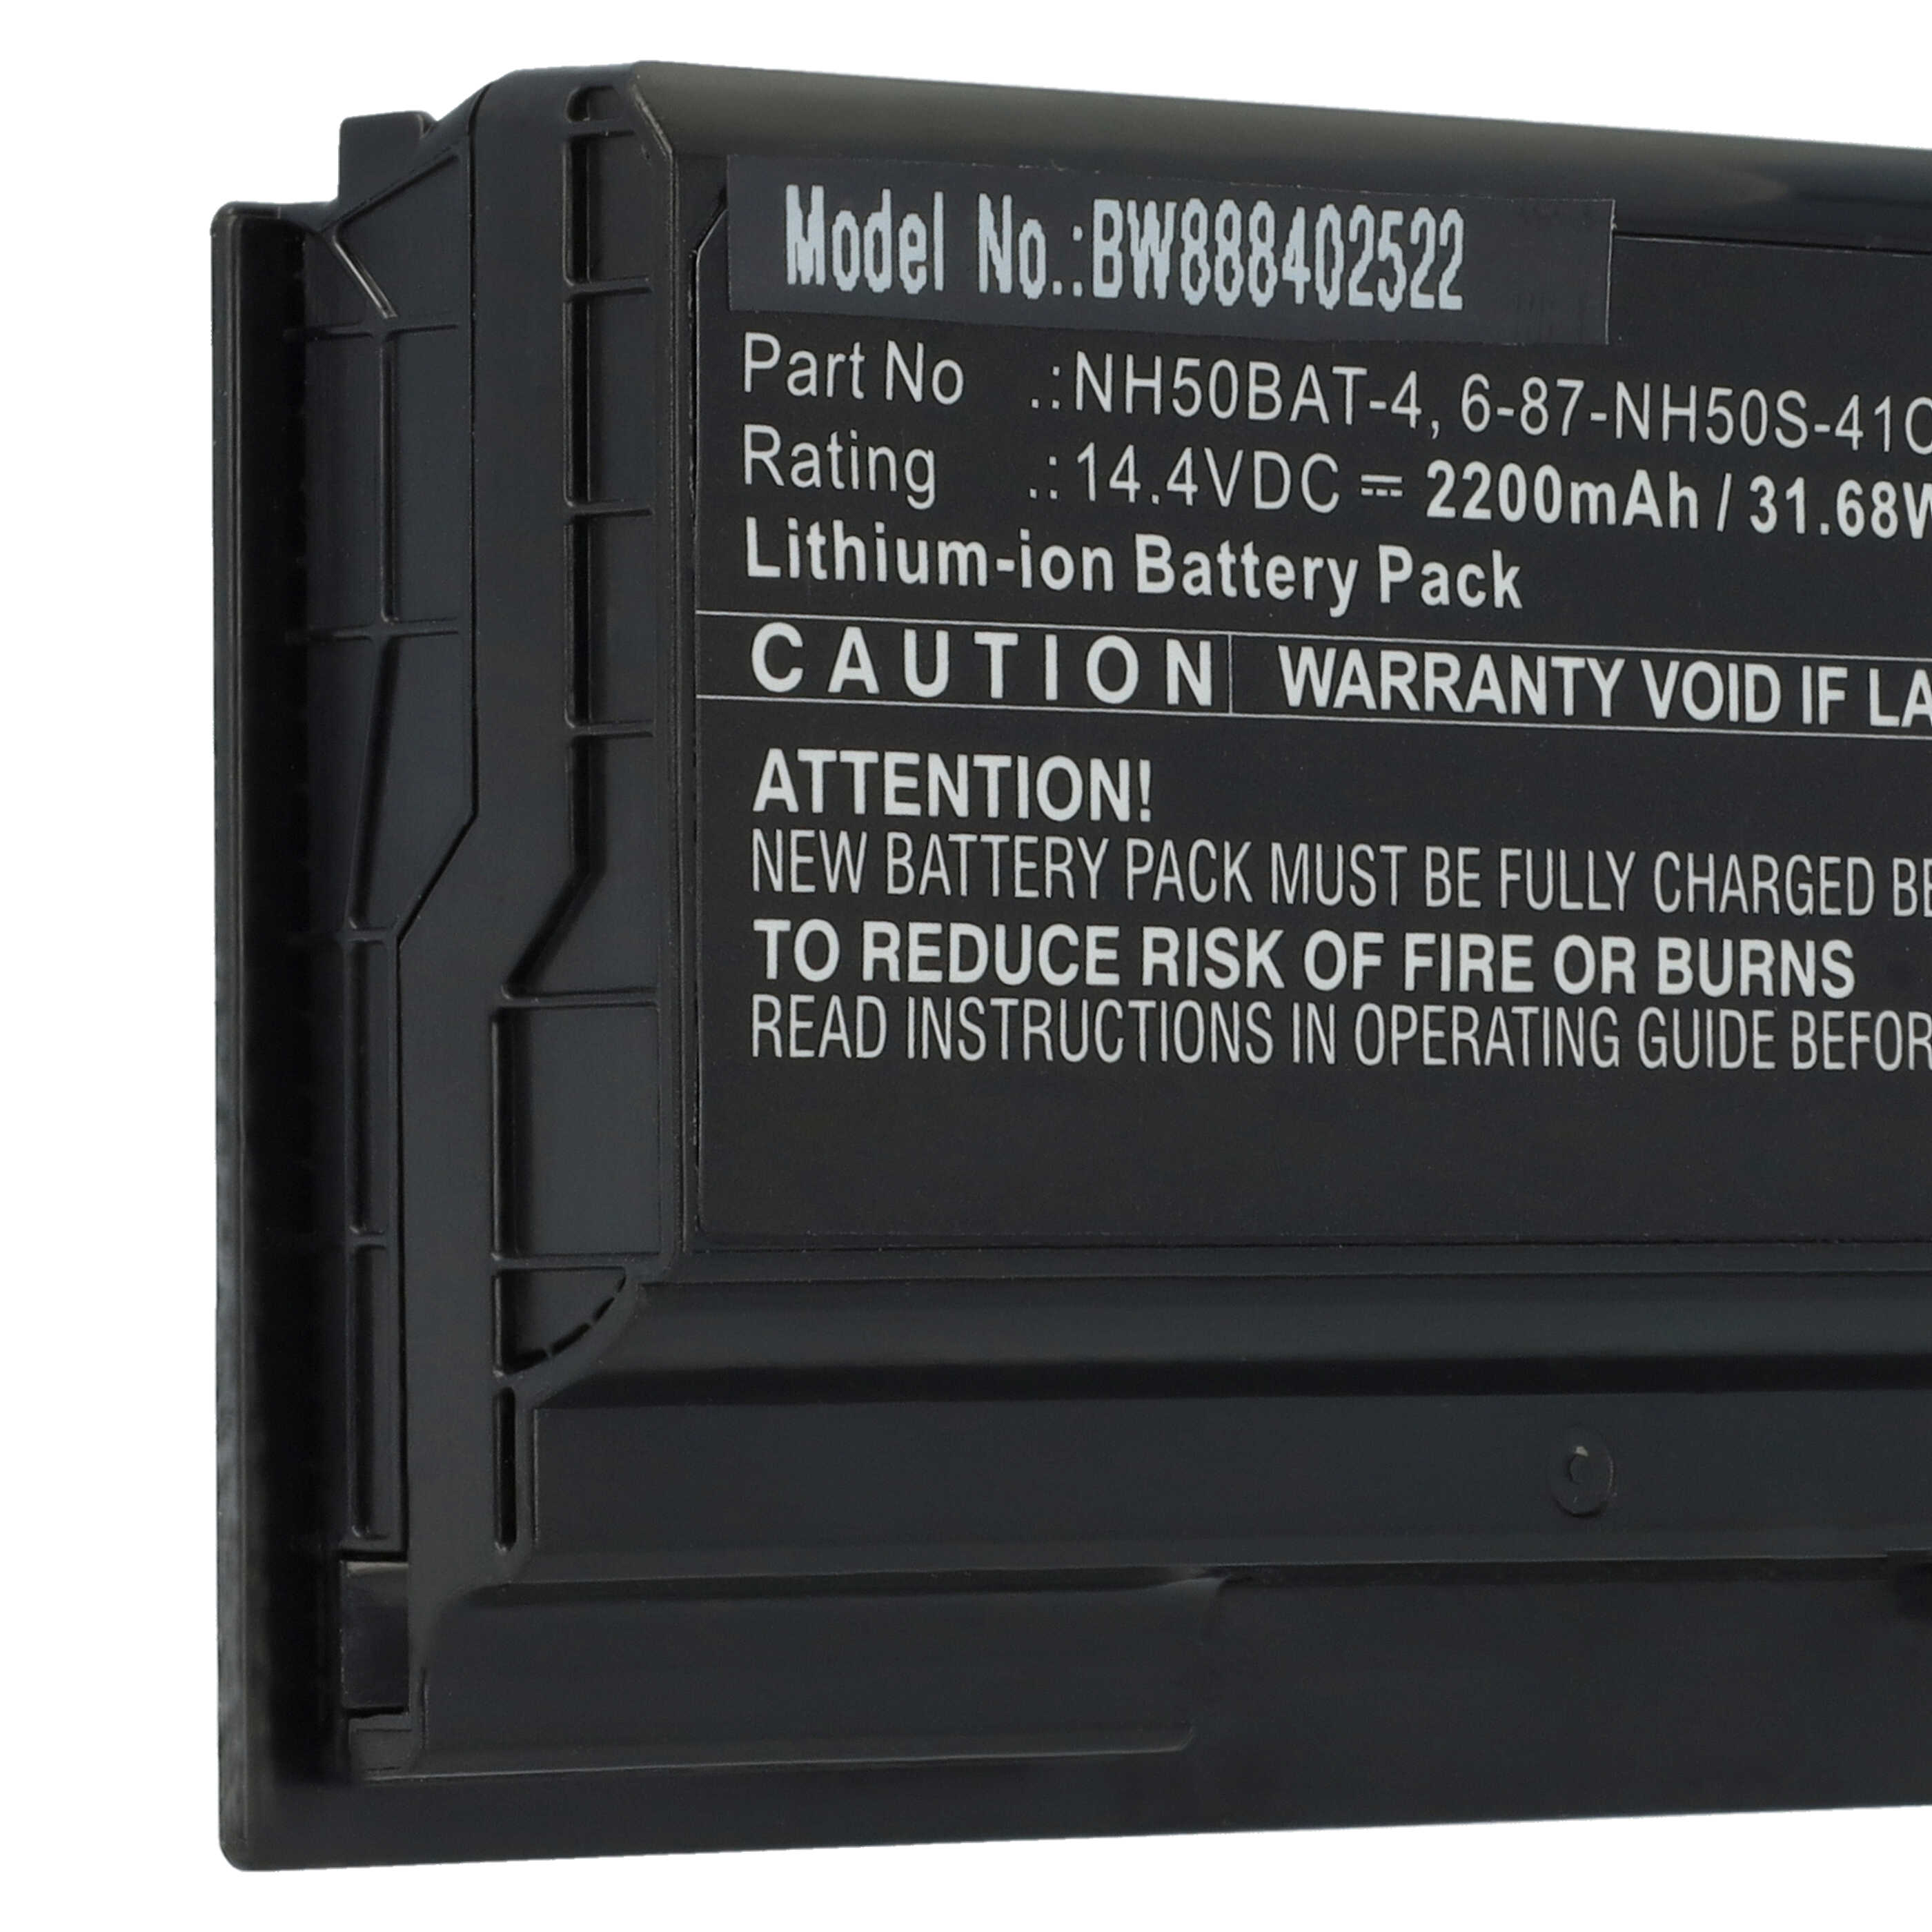 Batterie remplace Aorus 6-87-NH50S-41C00, NH50BAT-4 pour ordinateur portable - 2200mAh 14,4V Li-ion